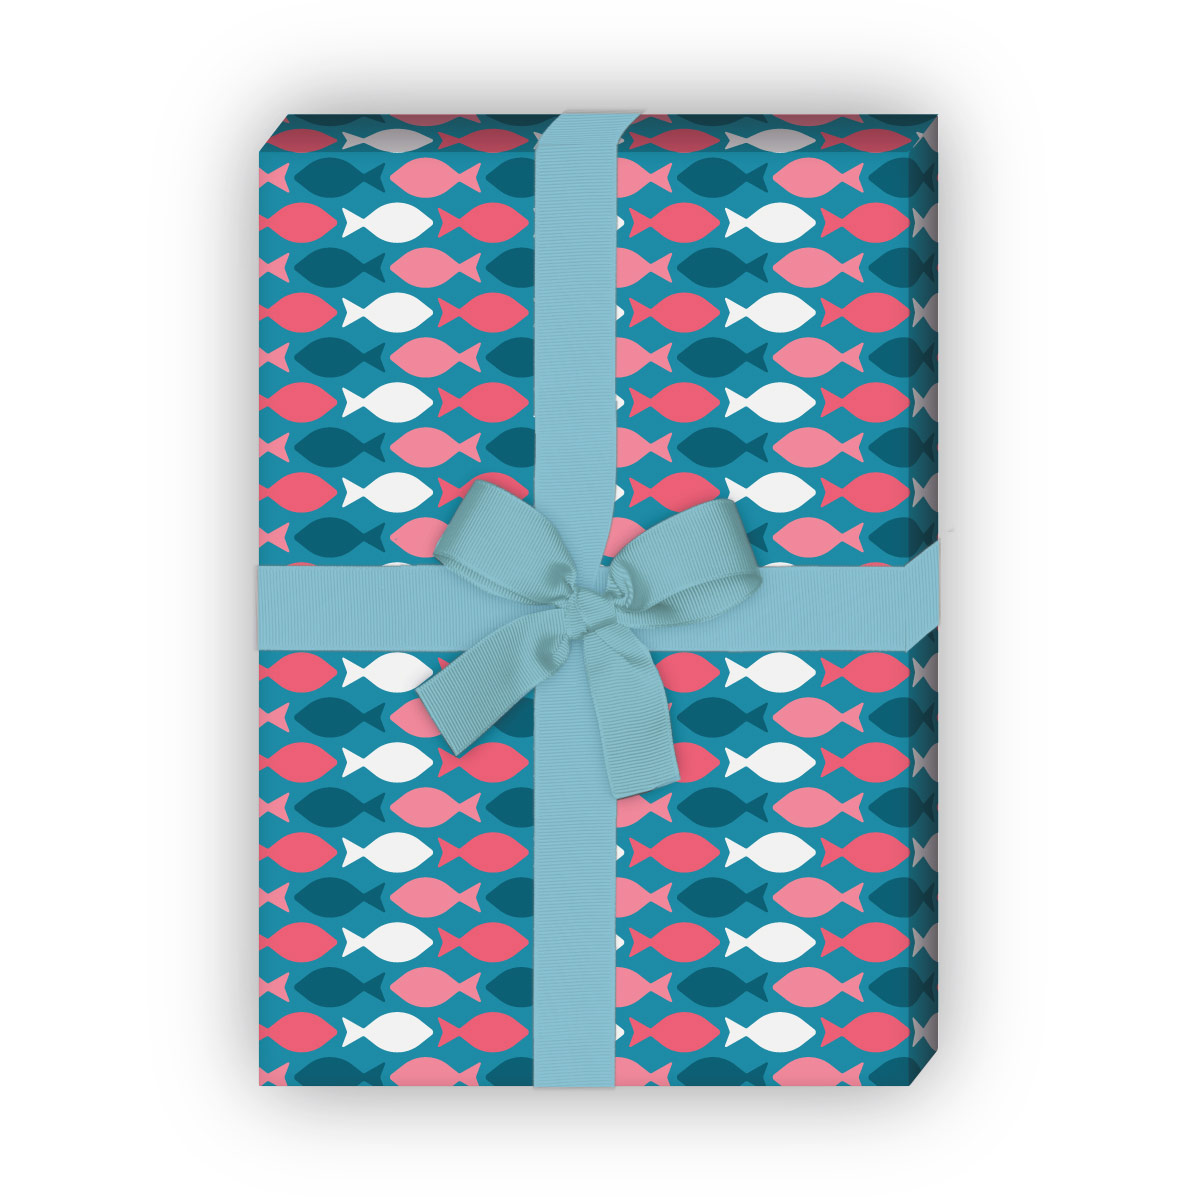 Kartenkaufrausch: Retro Geschenkpapier mit schwimmenden aus unserer Firmungs Papeterie in rosa